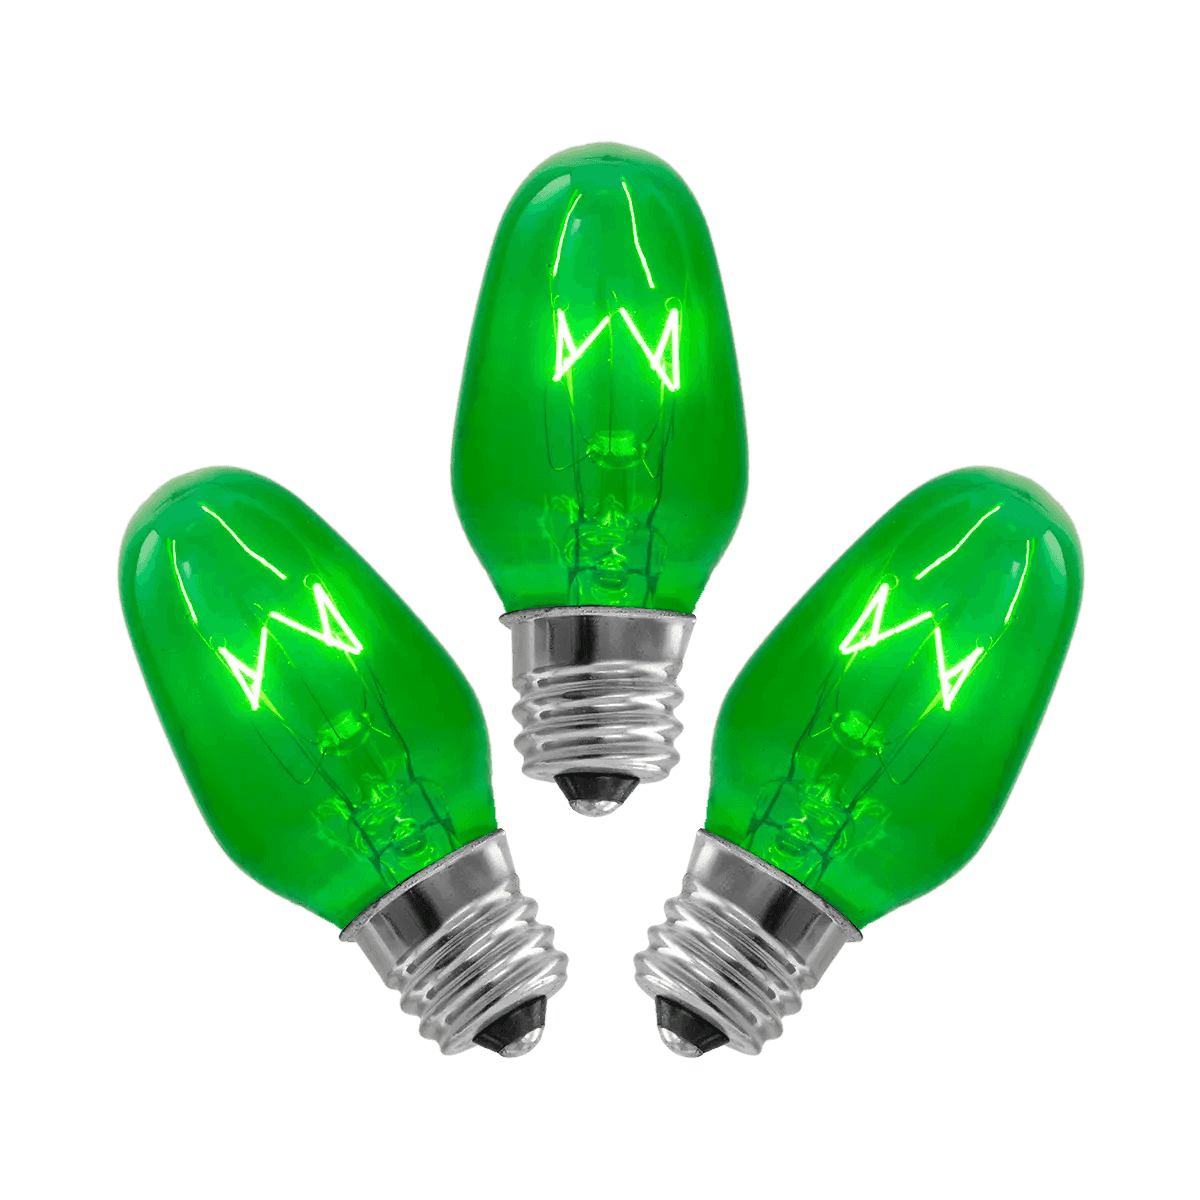 15 Watt Light Bulbs - 3 Pack – Green